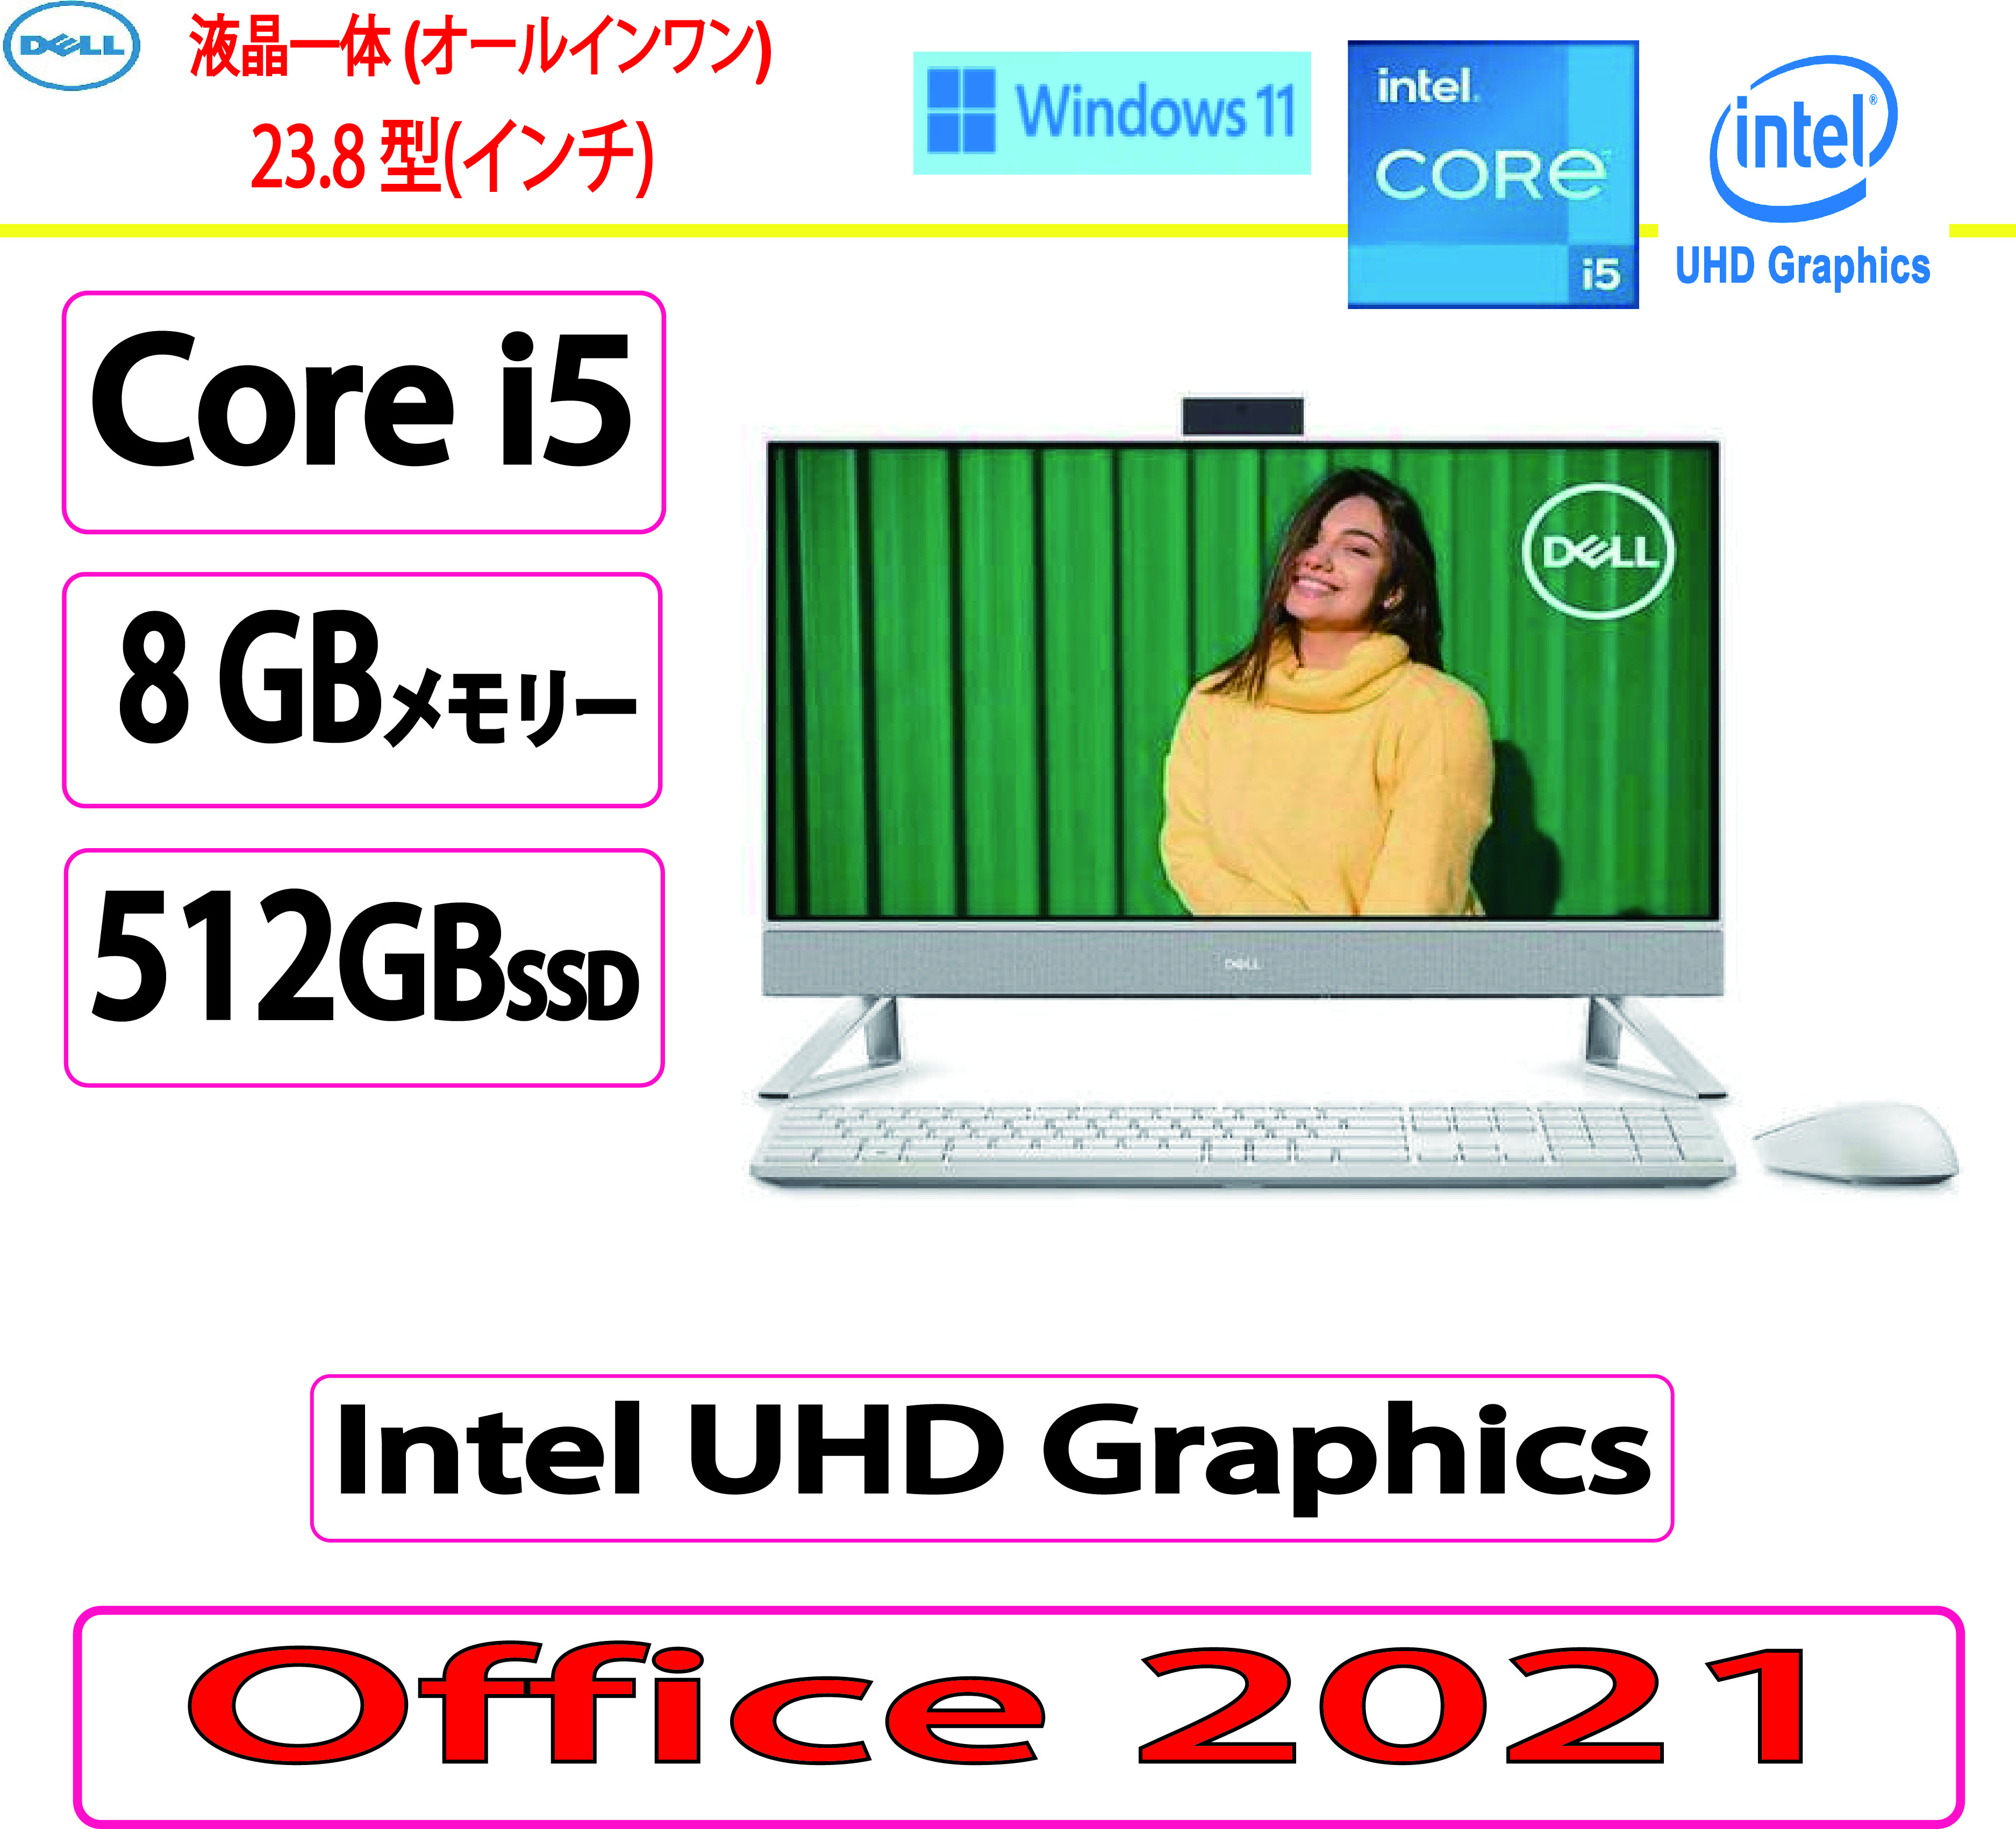 DELL FI57-CWHBW デスクトップパソコン Inspiron 24 5410 23.8インチ 10コア 第12世代 Intel Core i5 8GB SSD 512GB パールホワイトの商品画像